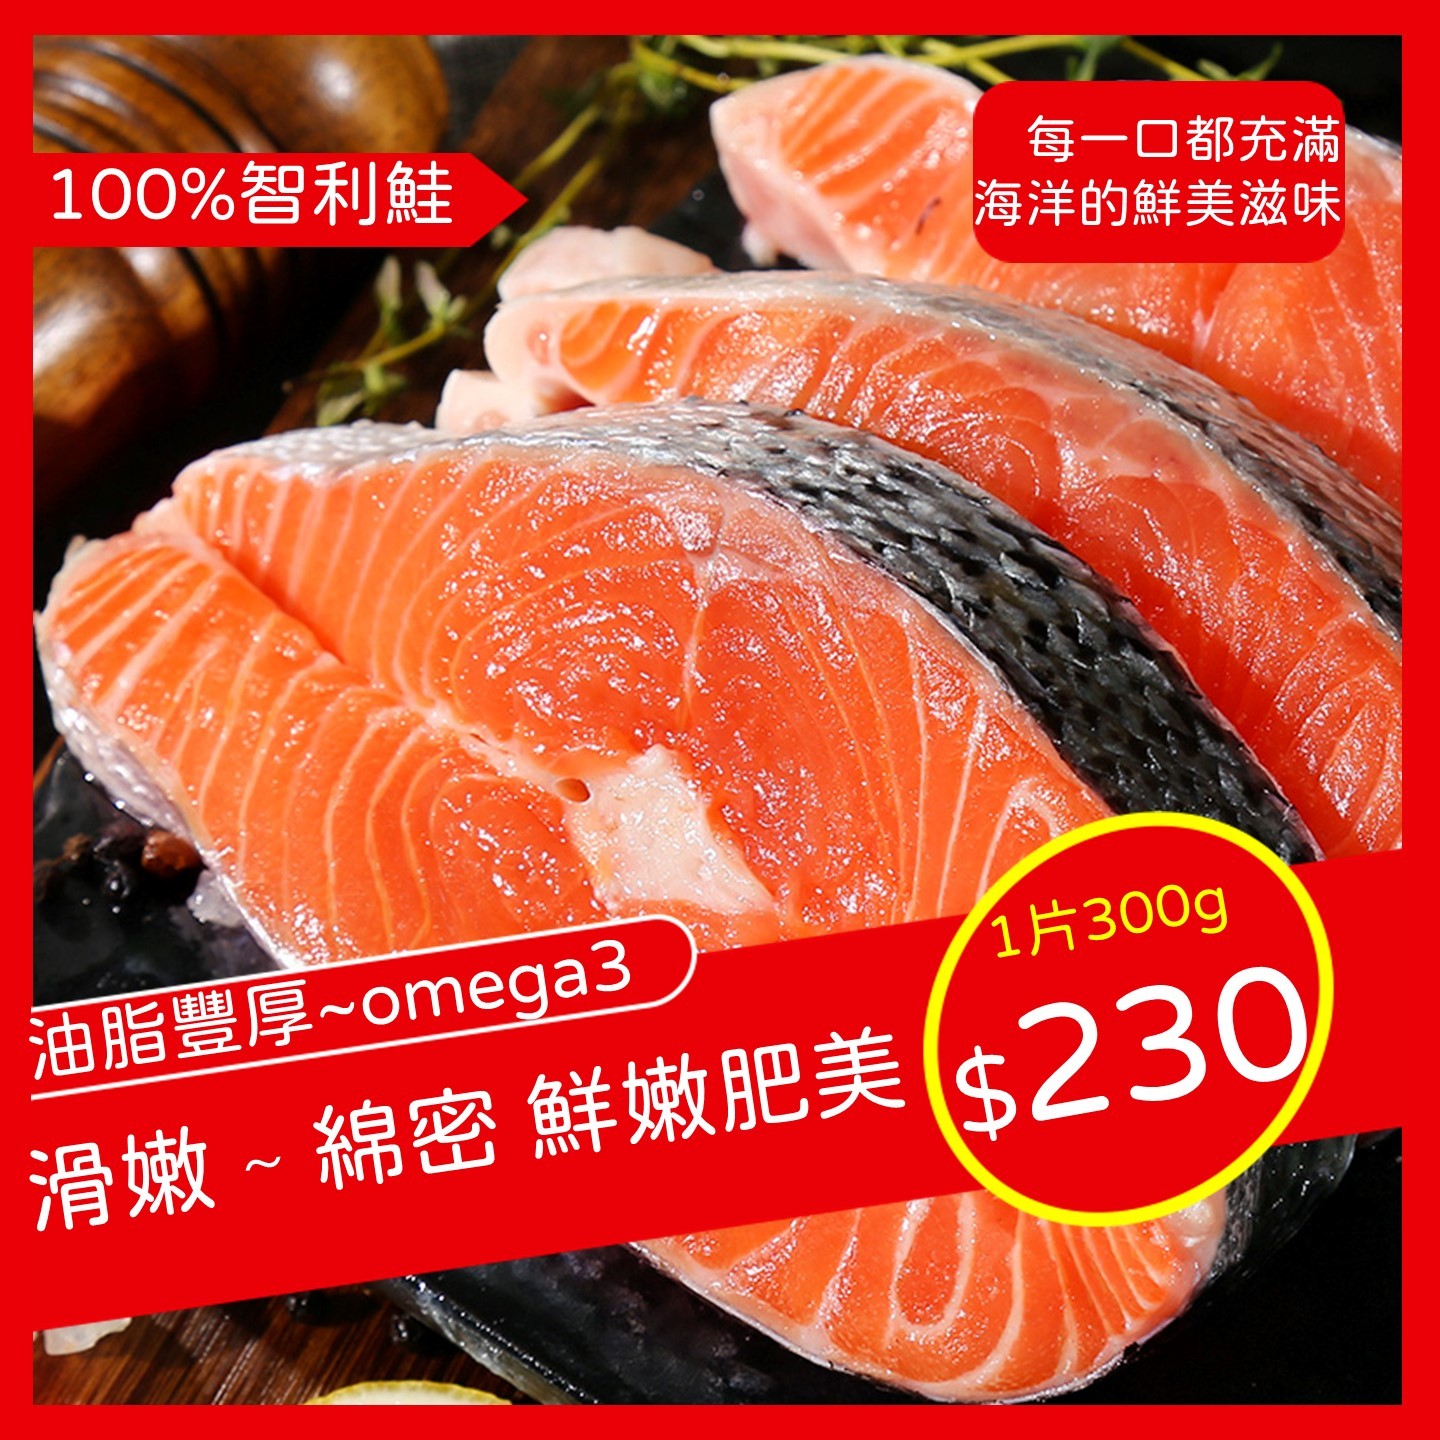 免運組【大西洋智利鮭魚中切】300G/片/5入/一組